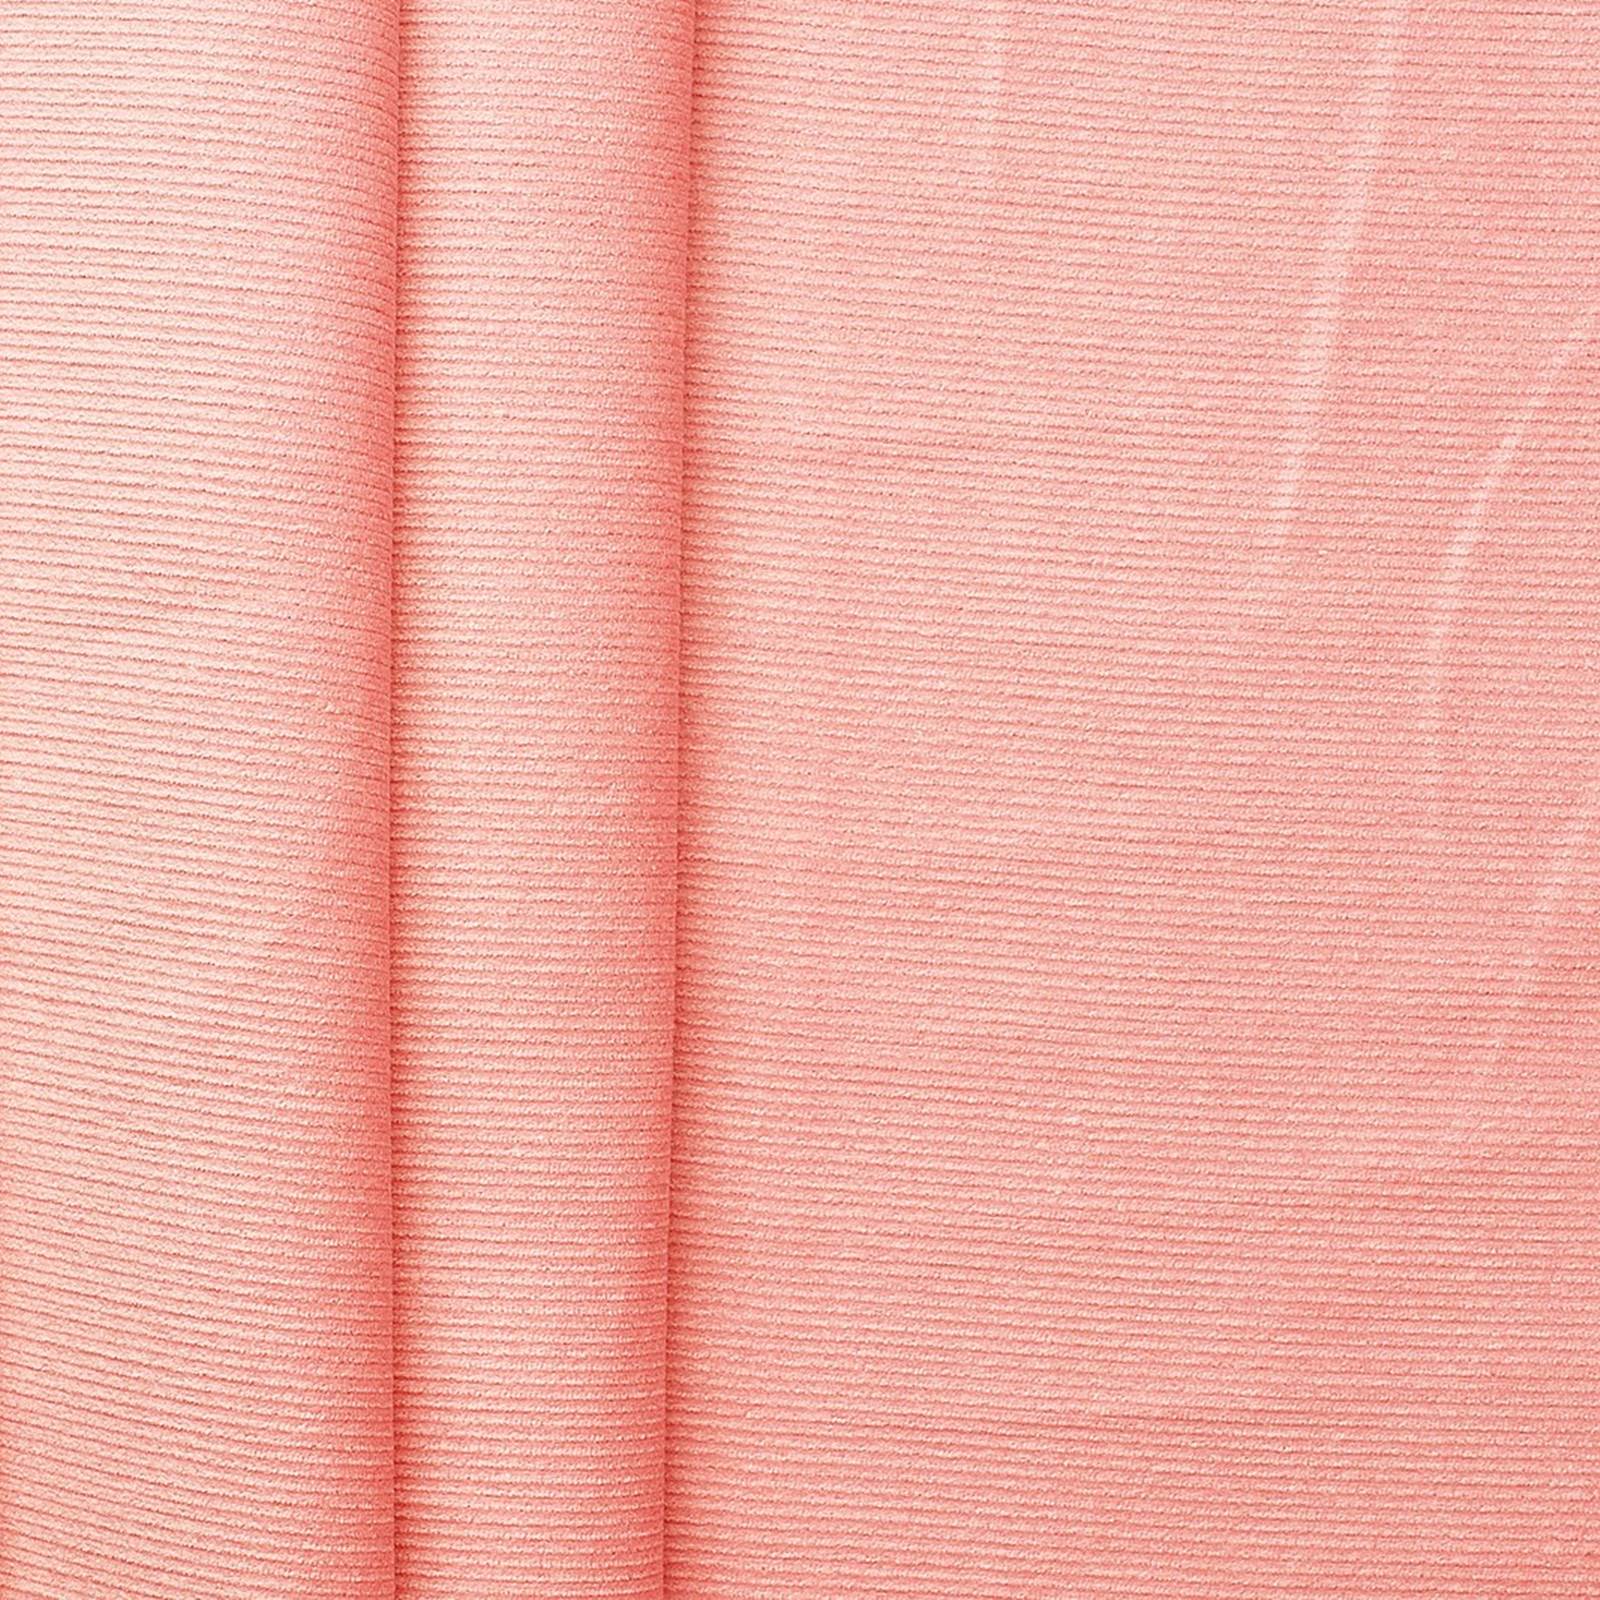 Feincord – Pana fina (rosa claro)